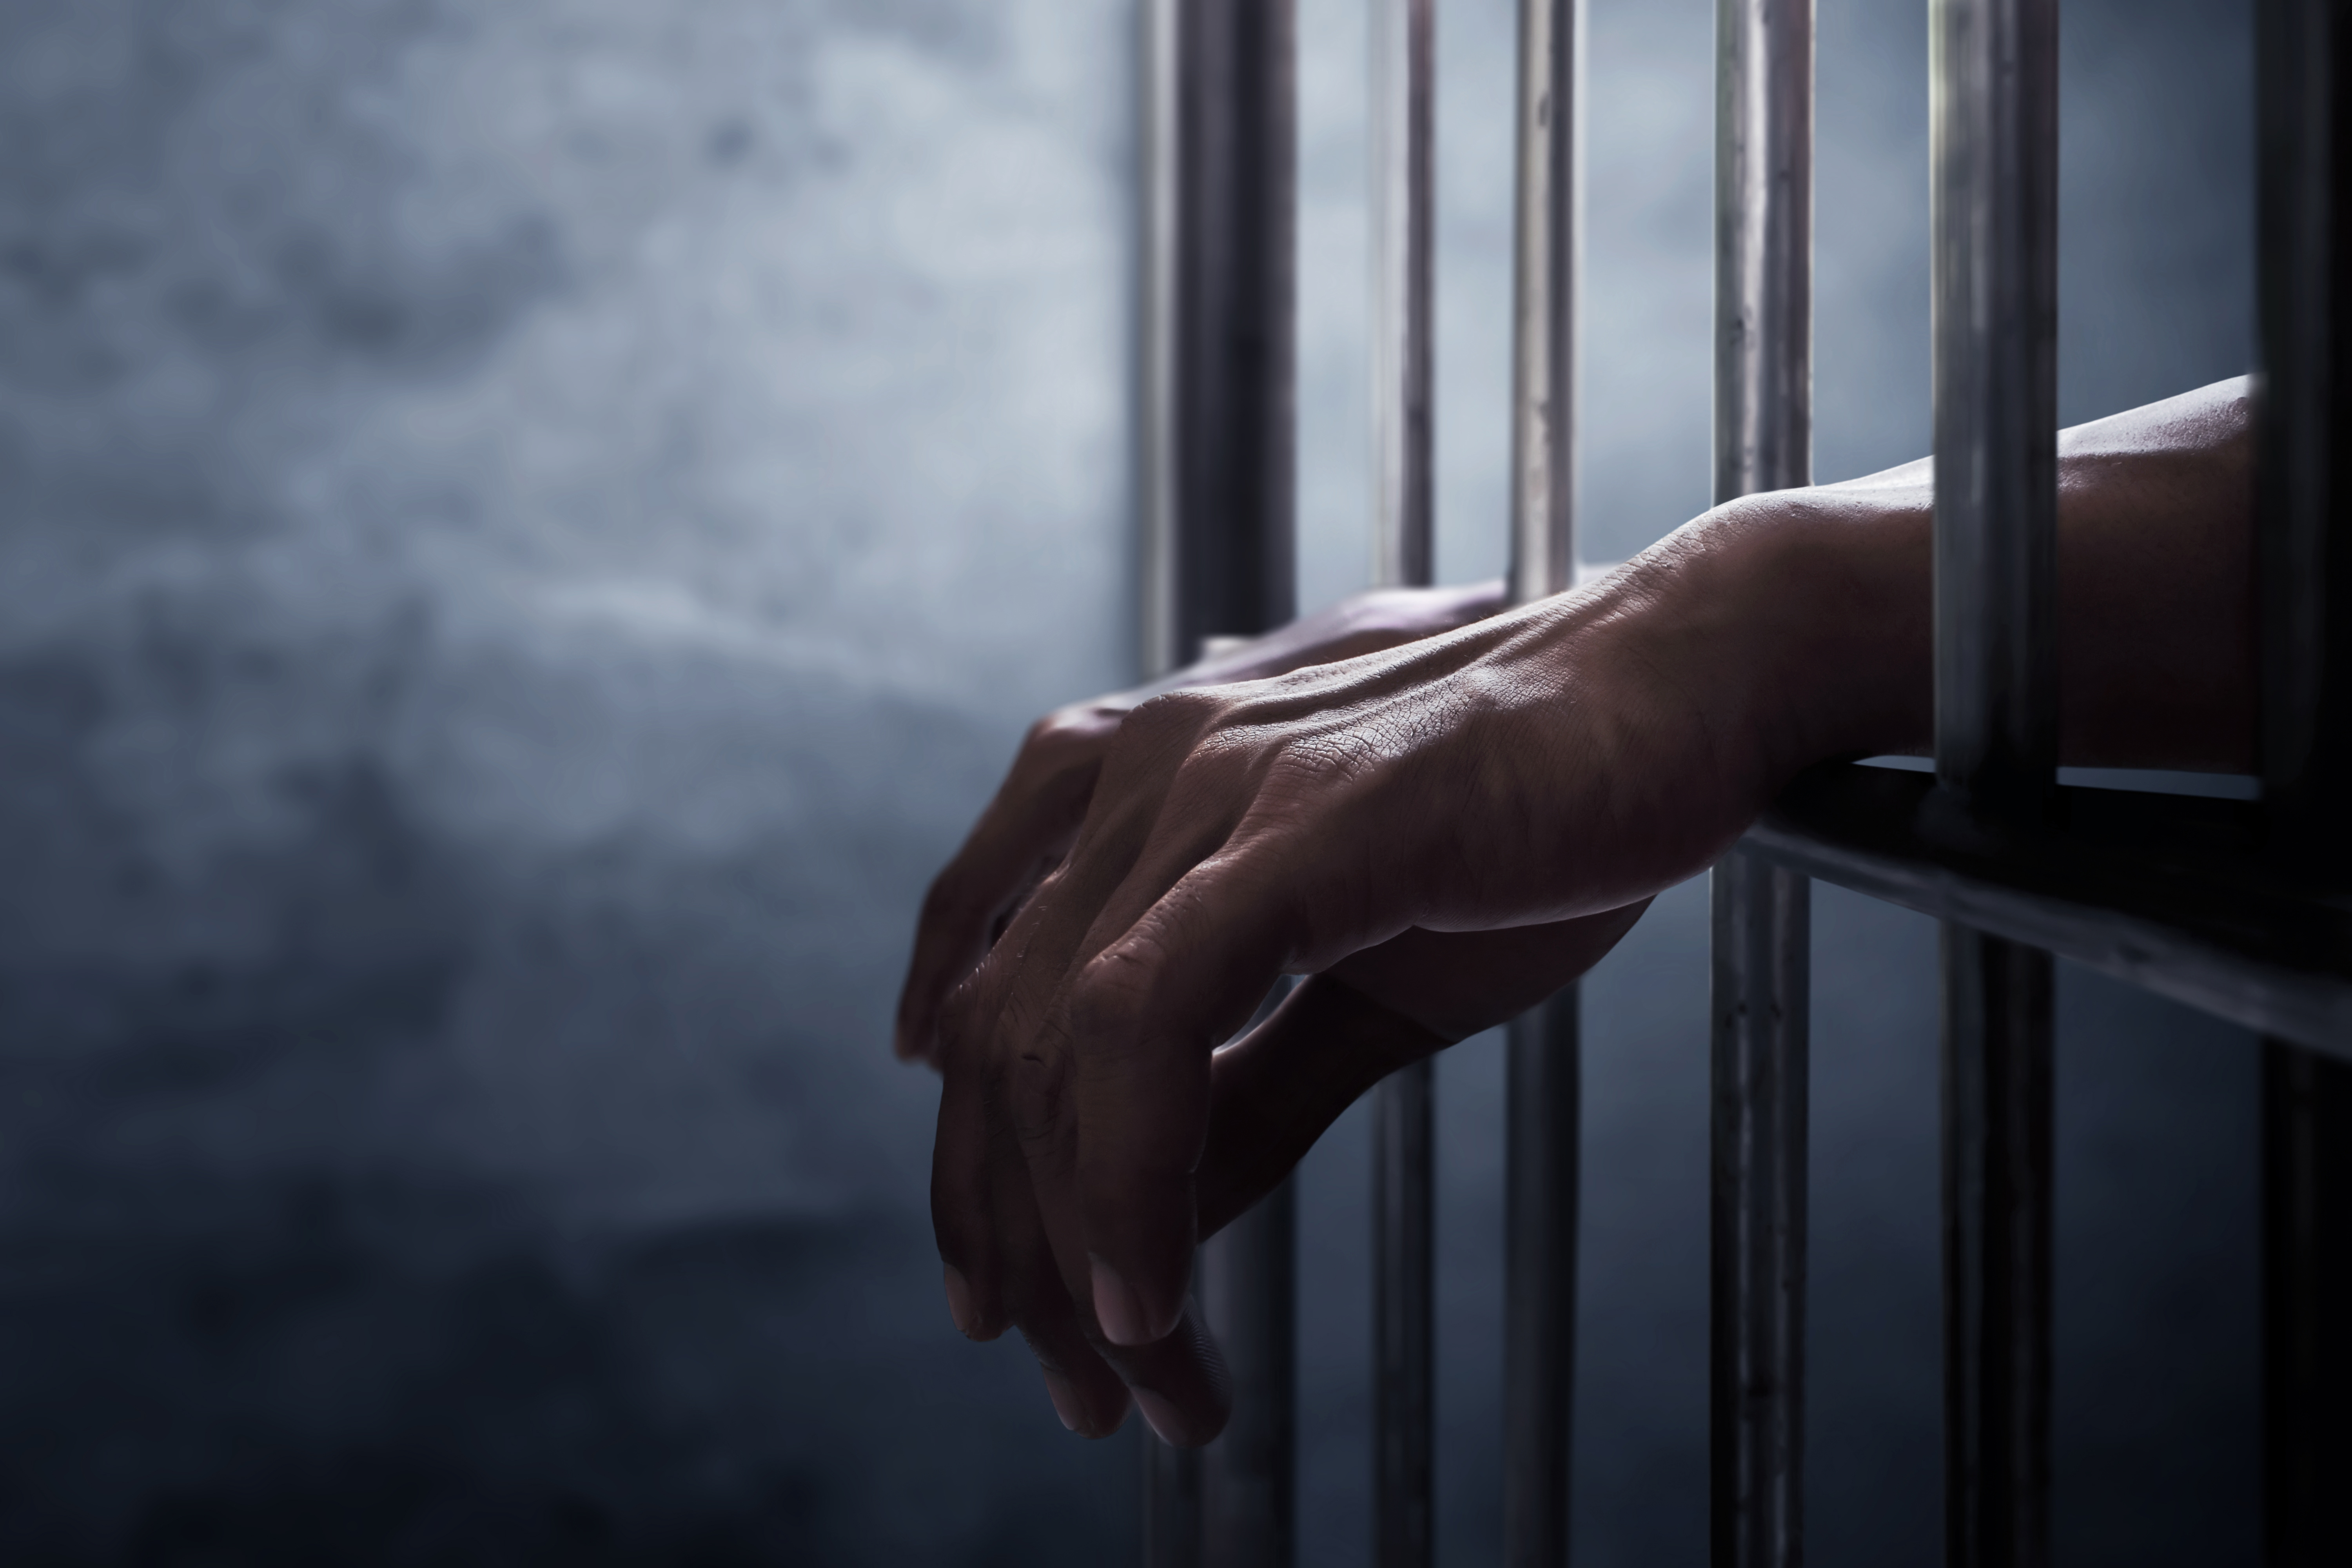 Man in prison | Source: Shutterstock